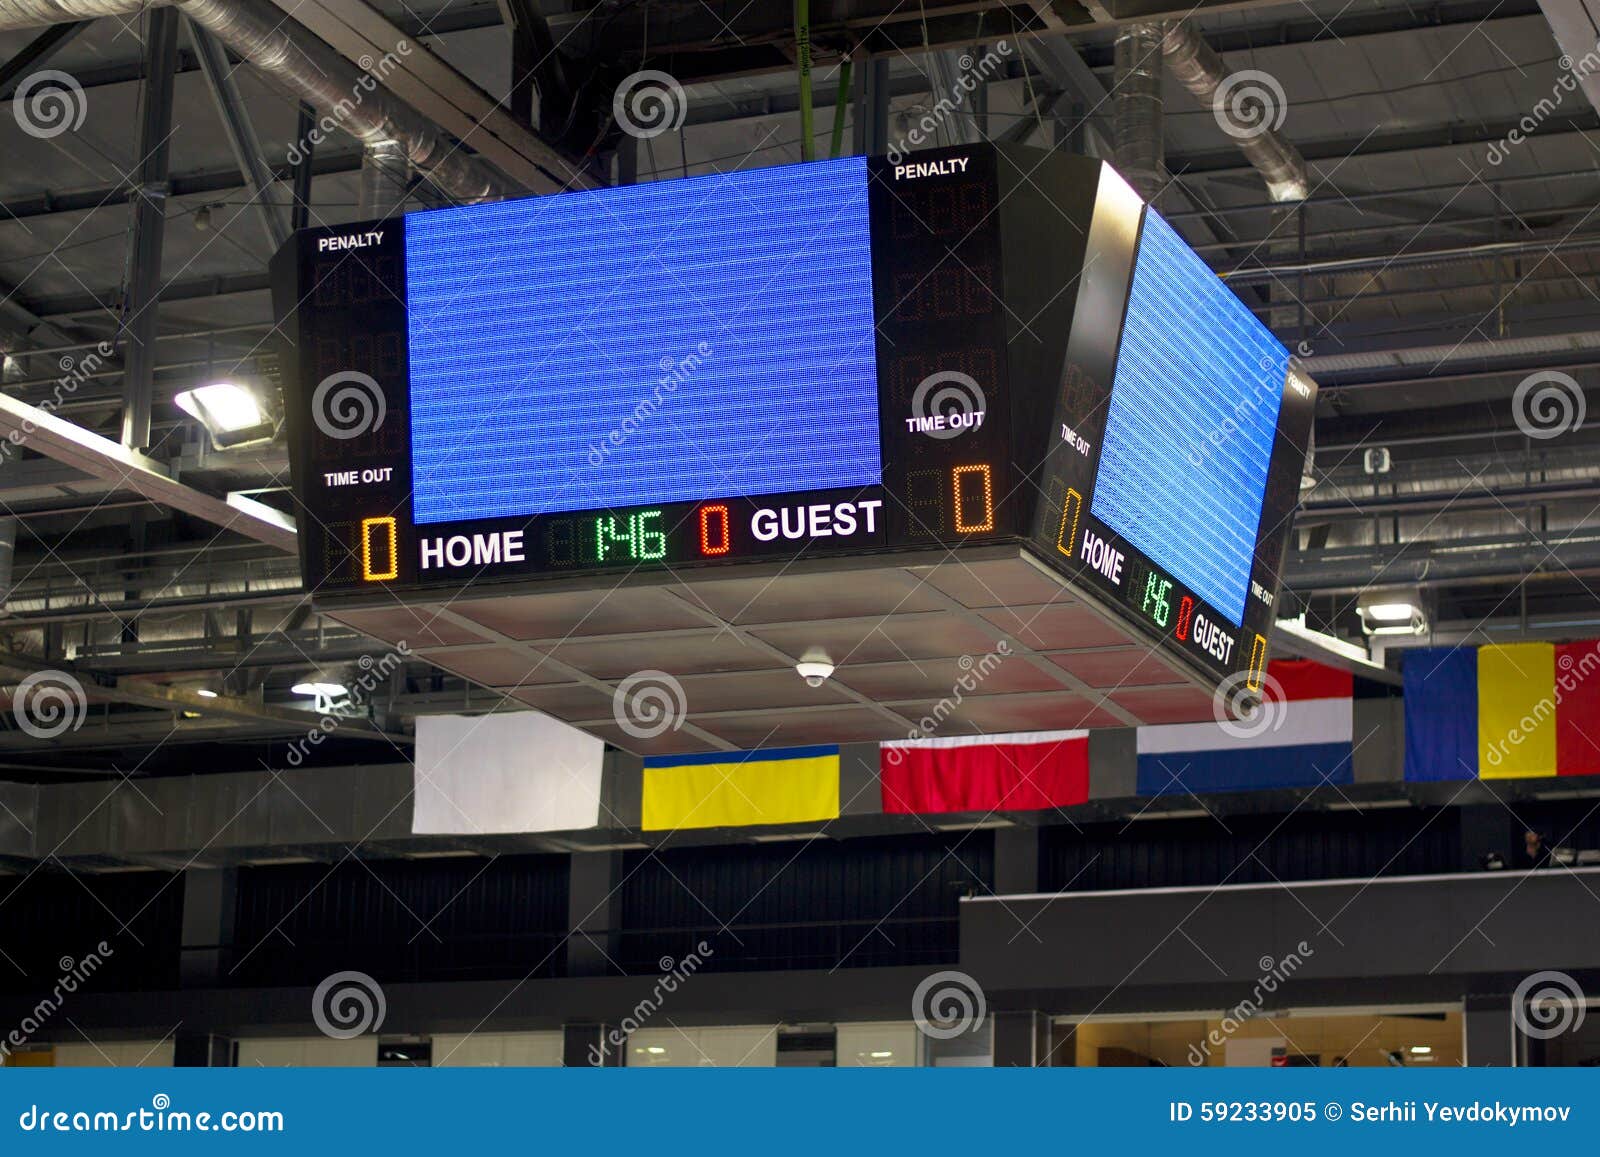 empty scoreboard